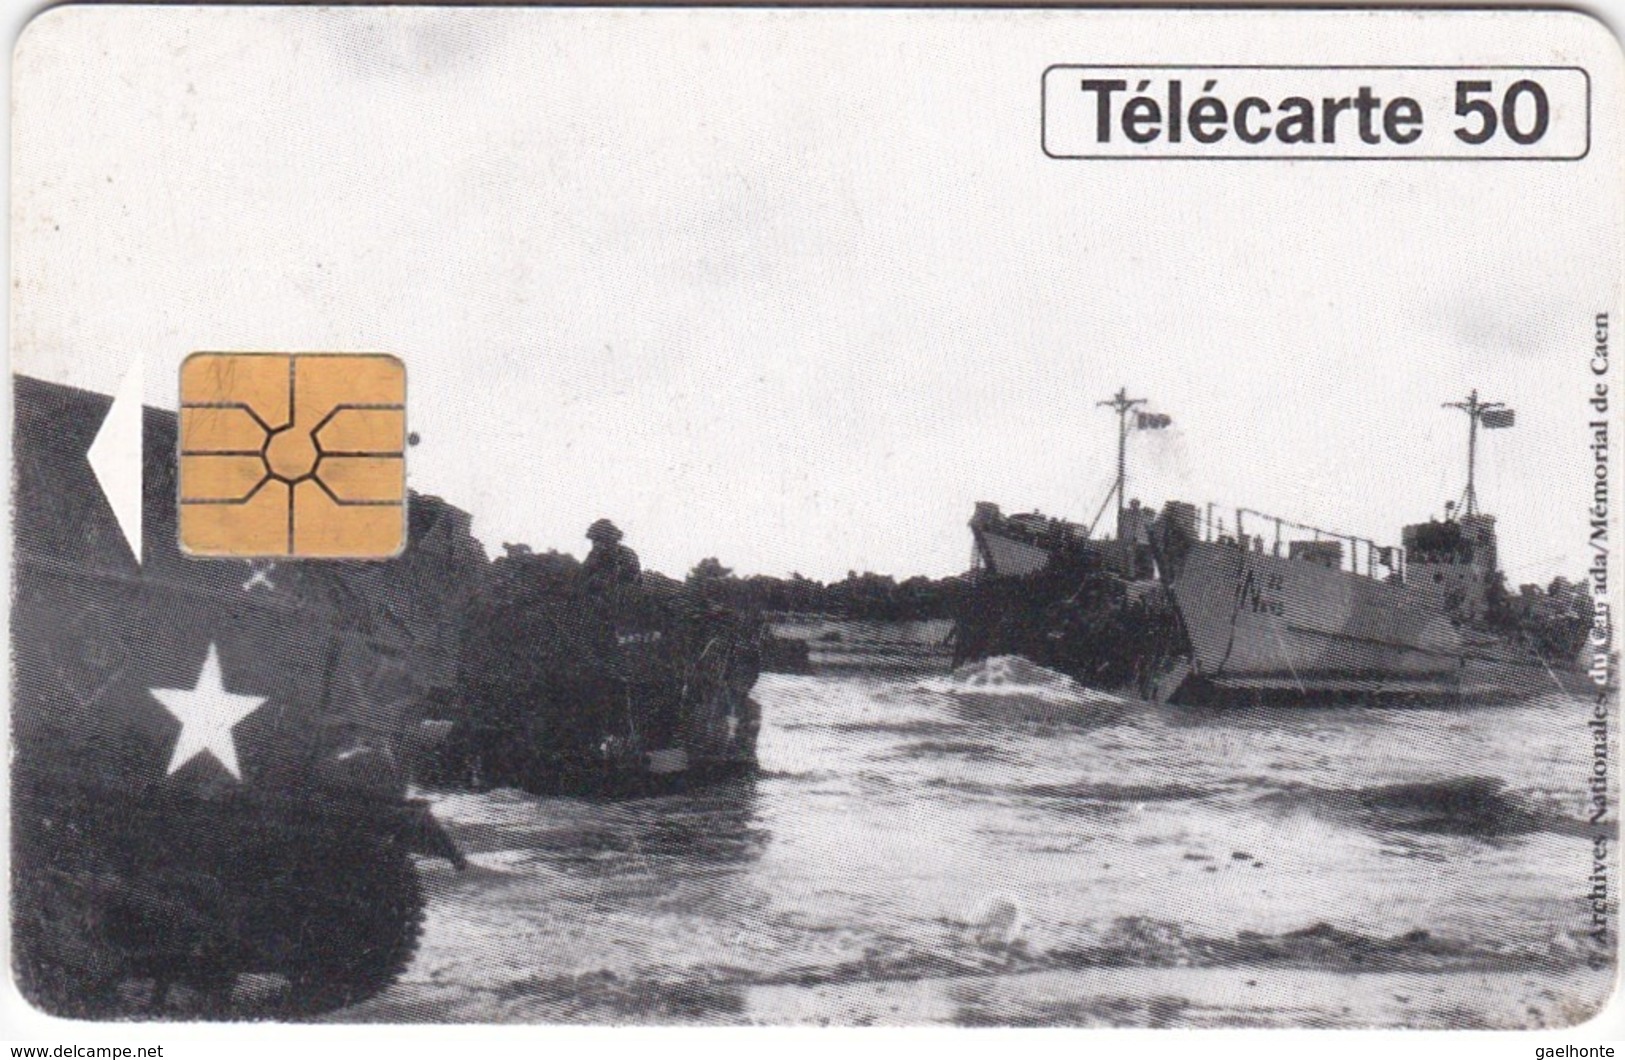 TC117 TÉLÉCARTE 50 UNITÉS - 1944-1994 - 50ème ANNIVERSAIRE DES DEBARQUEMENTS... - JUNO BEACH 06 JUIN 1944 - Army